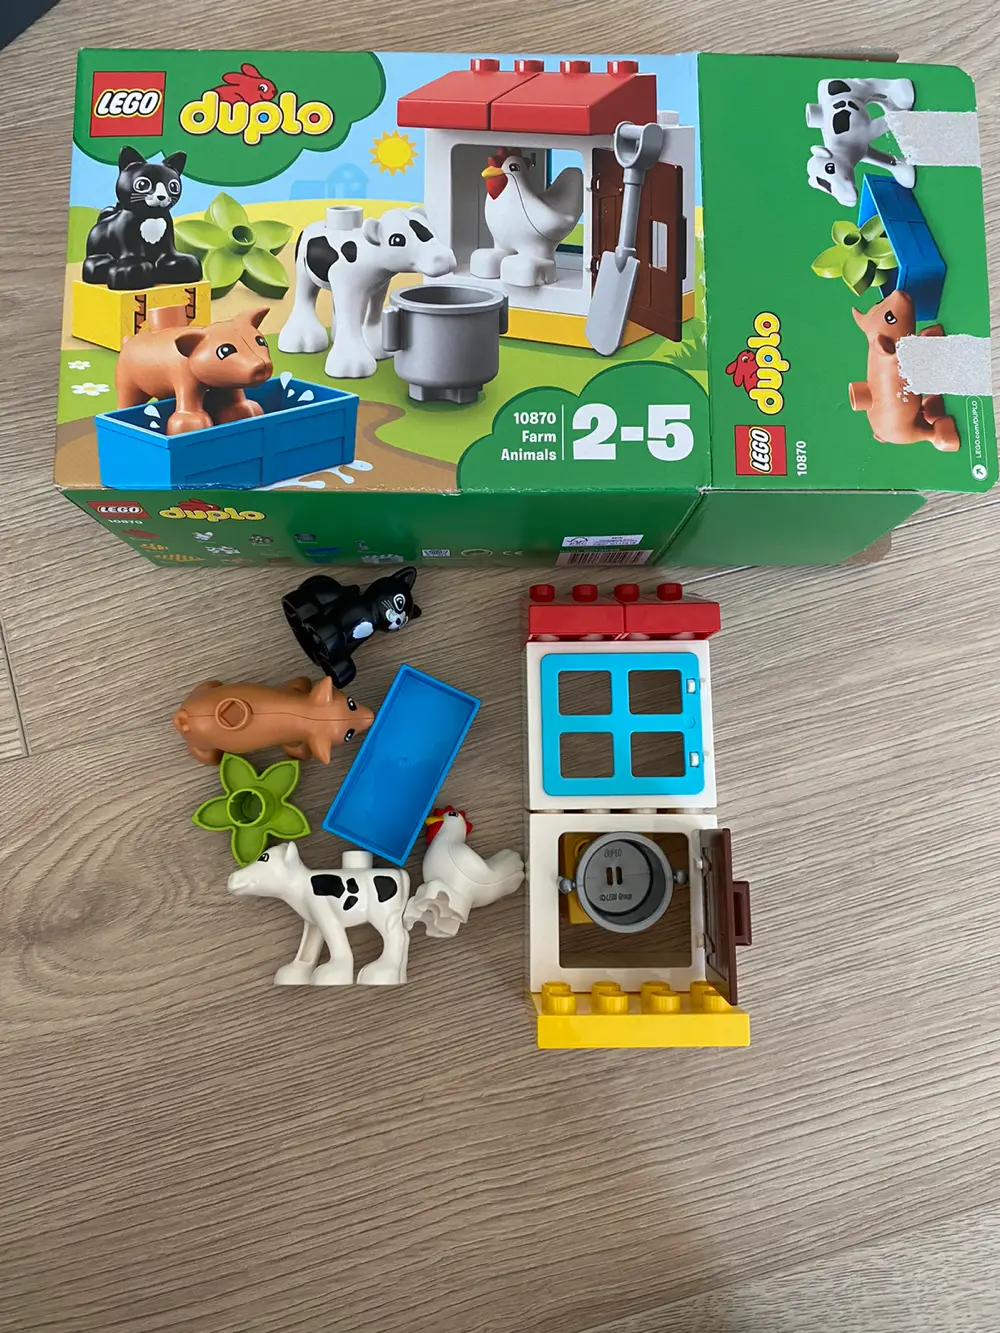 pave Eve ukendt Køb Lego duplo Snehvide 6152 af Kathrine Skovsted på Reshopper · Shop  secondhand til børn, mor og bolig